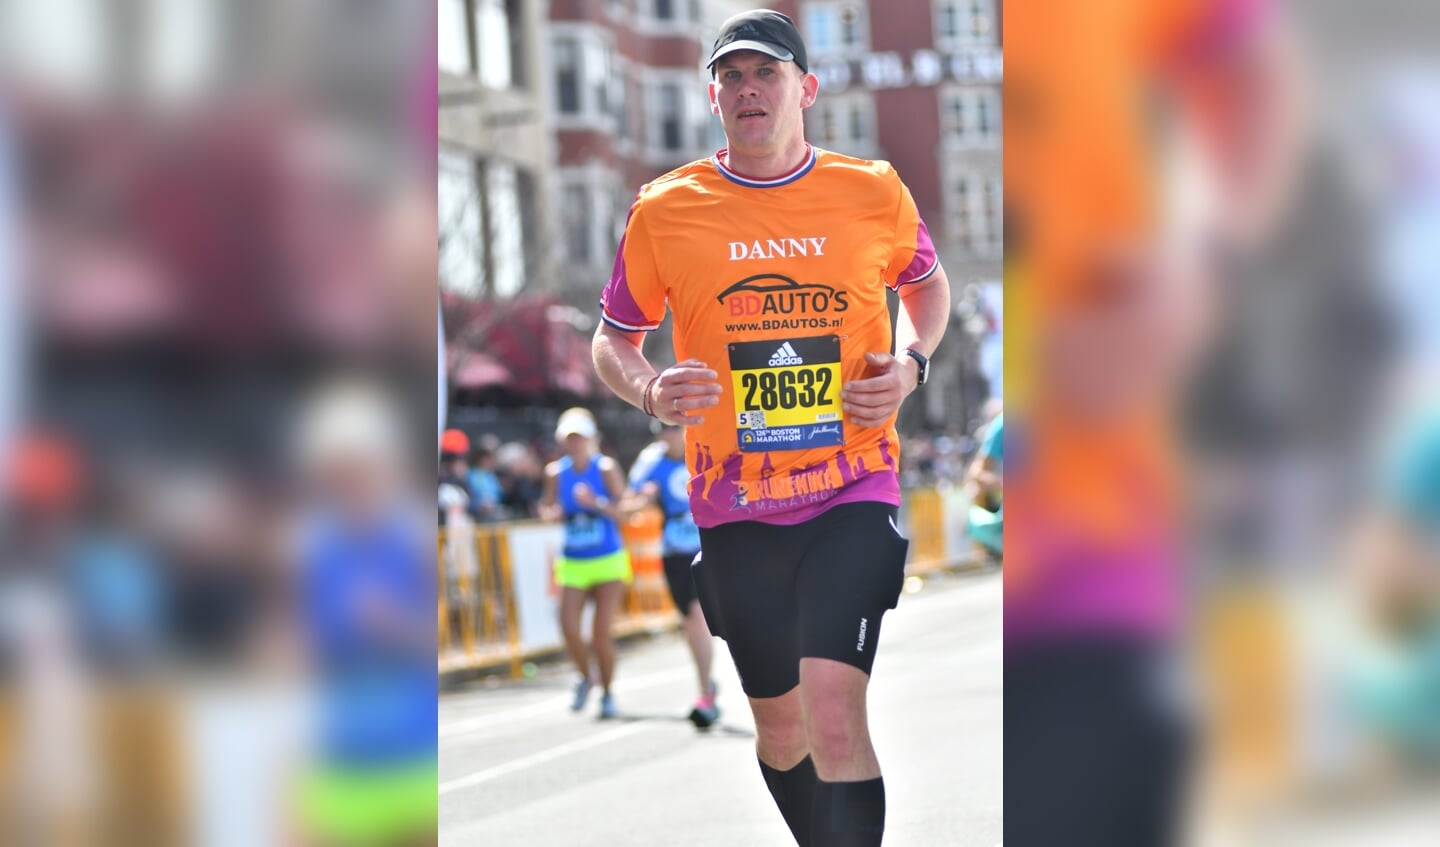 Danny liep marathons in New York, Chicago, Tokio, Londen, Berlijn en recent in Boston.